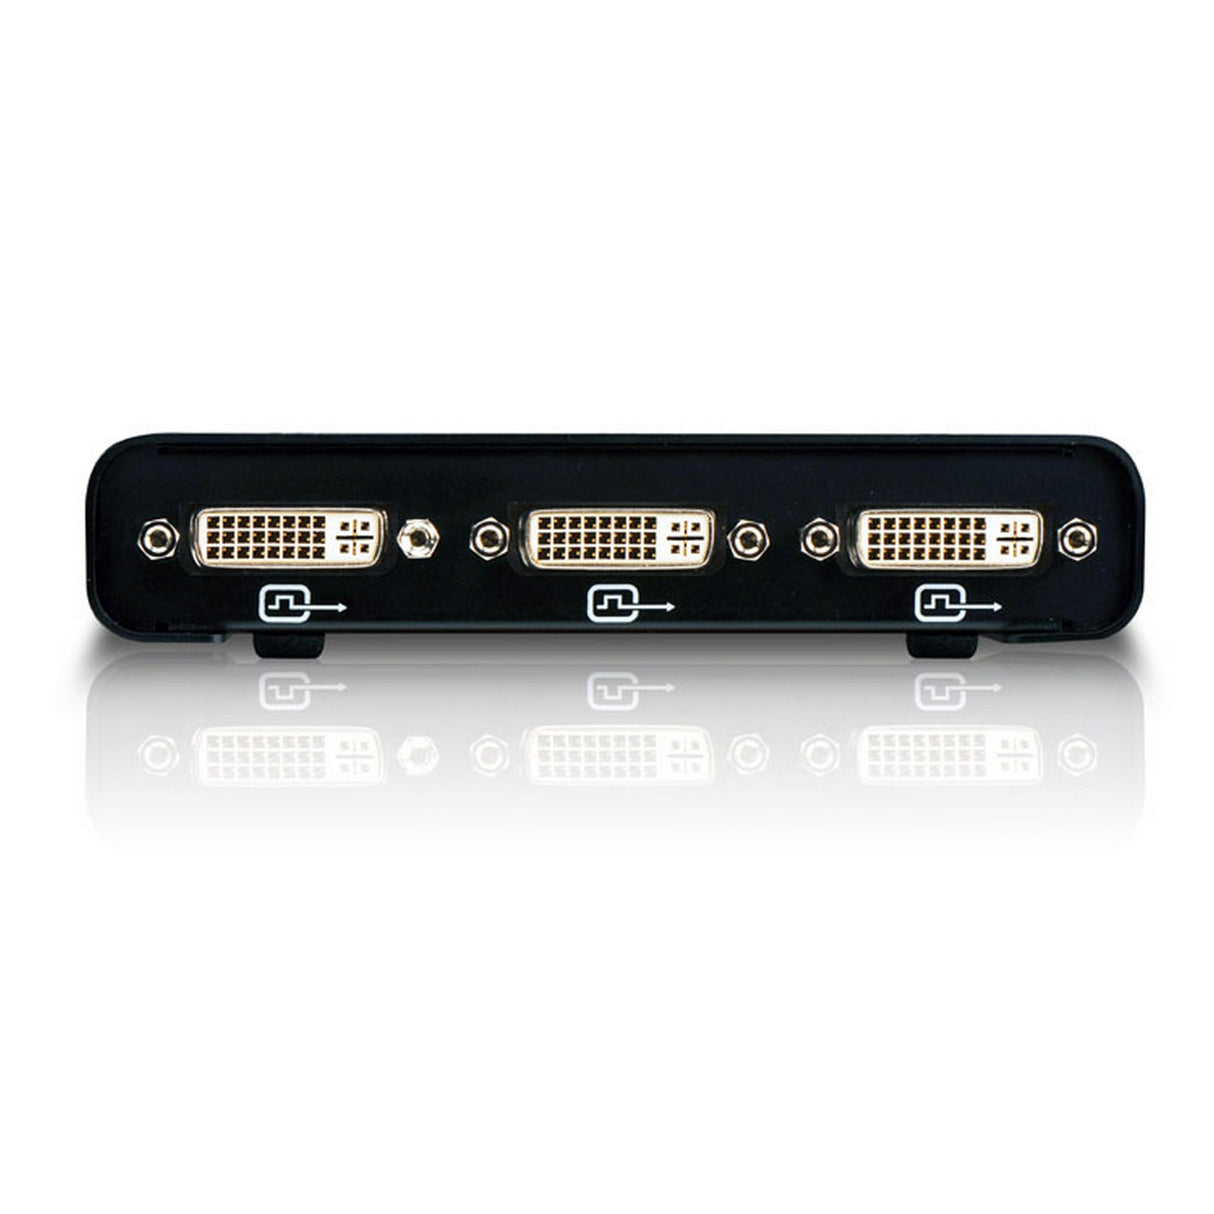 Matrox T2G-DP3D-IF TripleHead2Go Digital SE External Multi-Display Adapter